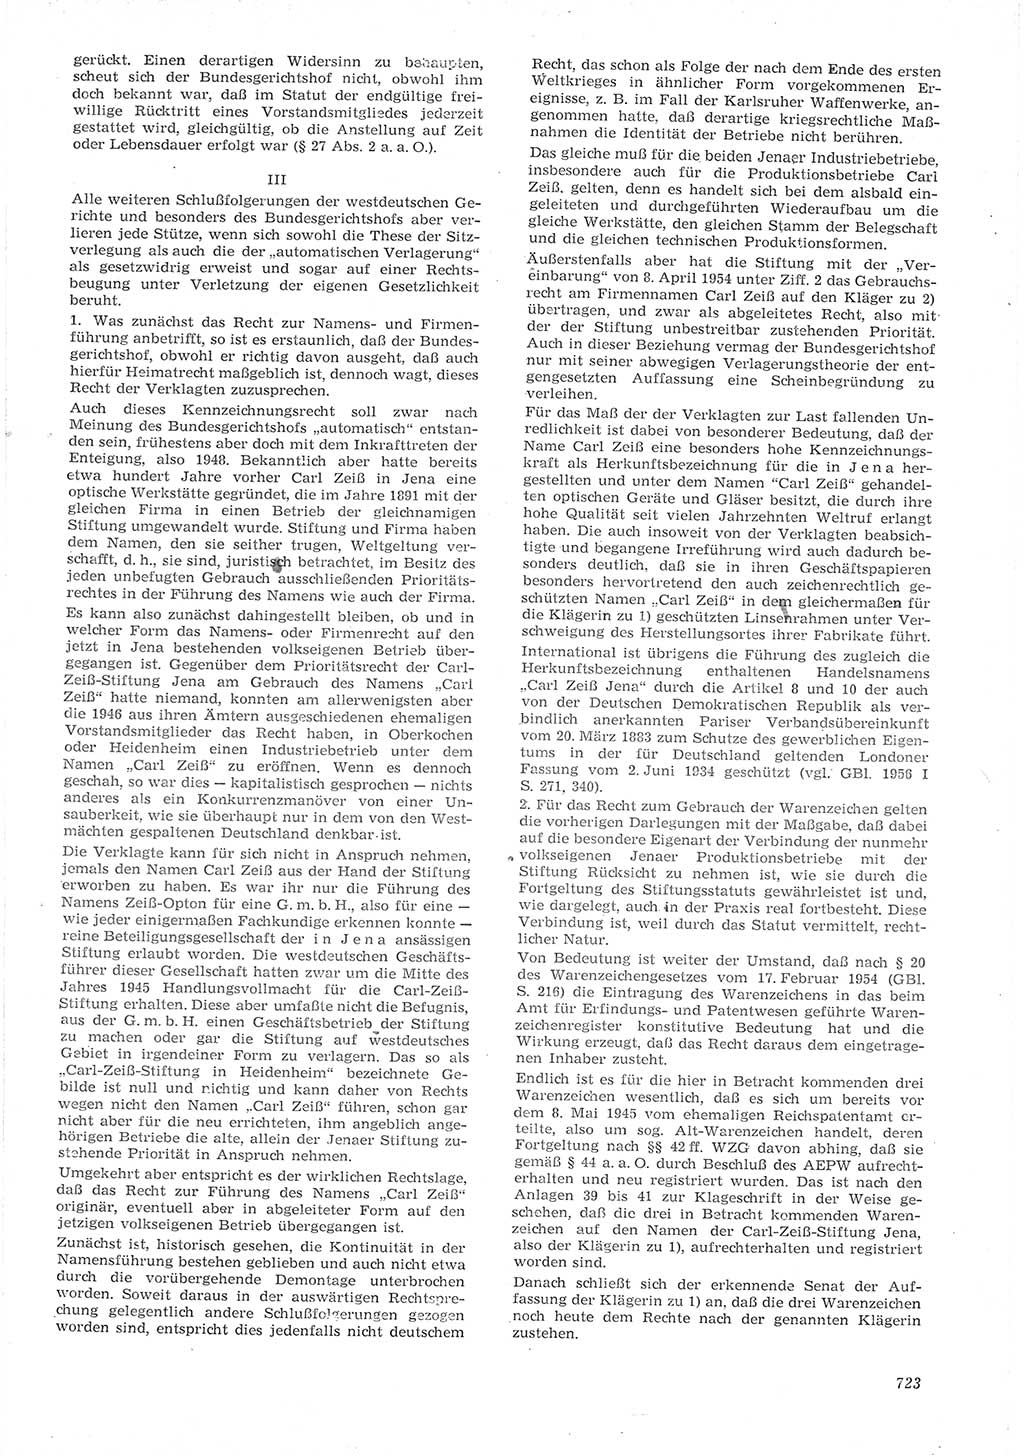 Neue Justiz (NJ), Zeitschrift für Recht und Rechtswissenschaft [Deutsche Demokratische Republik (DDR)], 15. Jahrgang 1961, Seite 723 (NJ DDR 1961, S. 723)